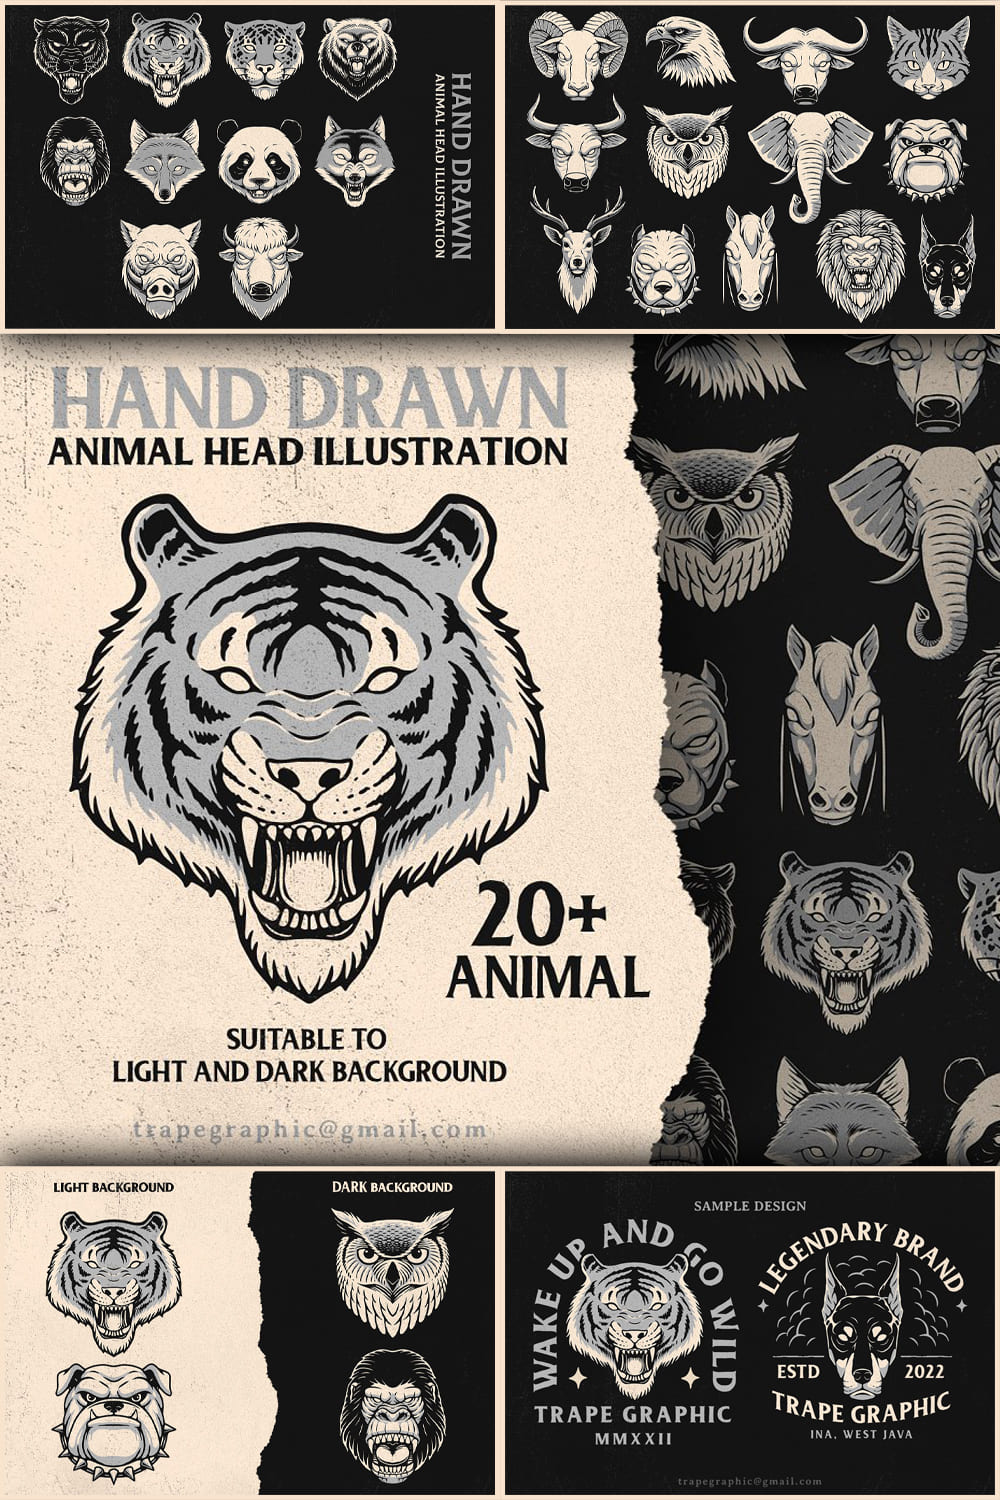 Animals Head Illustration Collection - Pinterest.